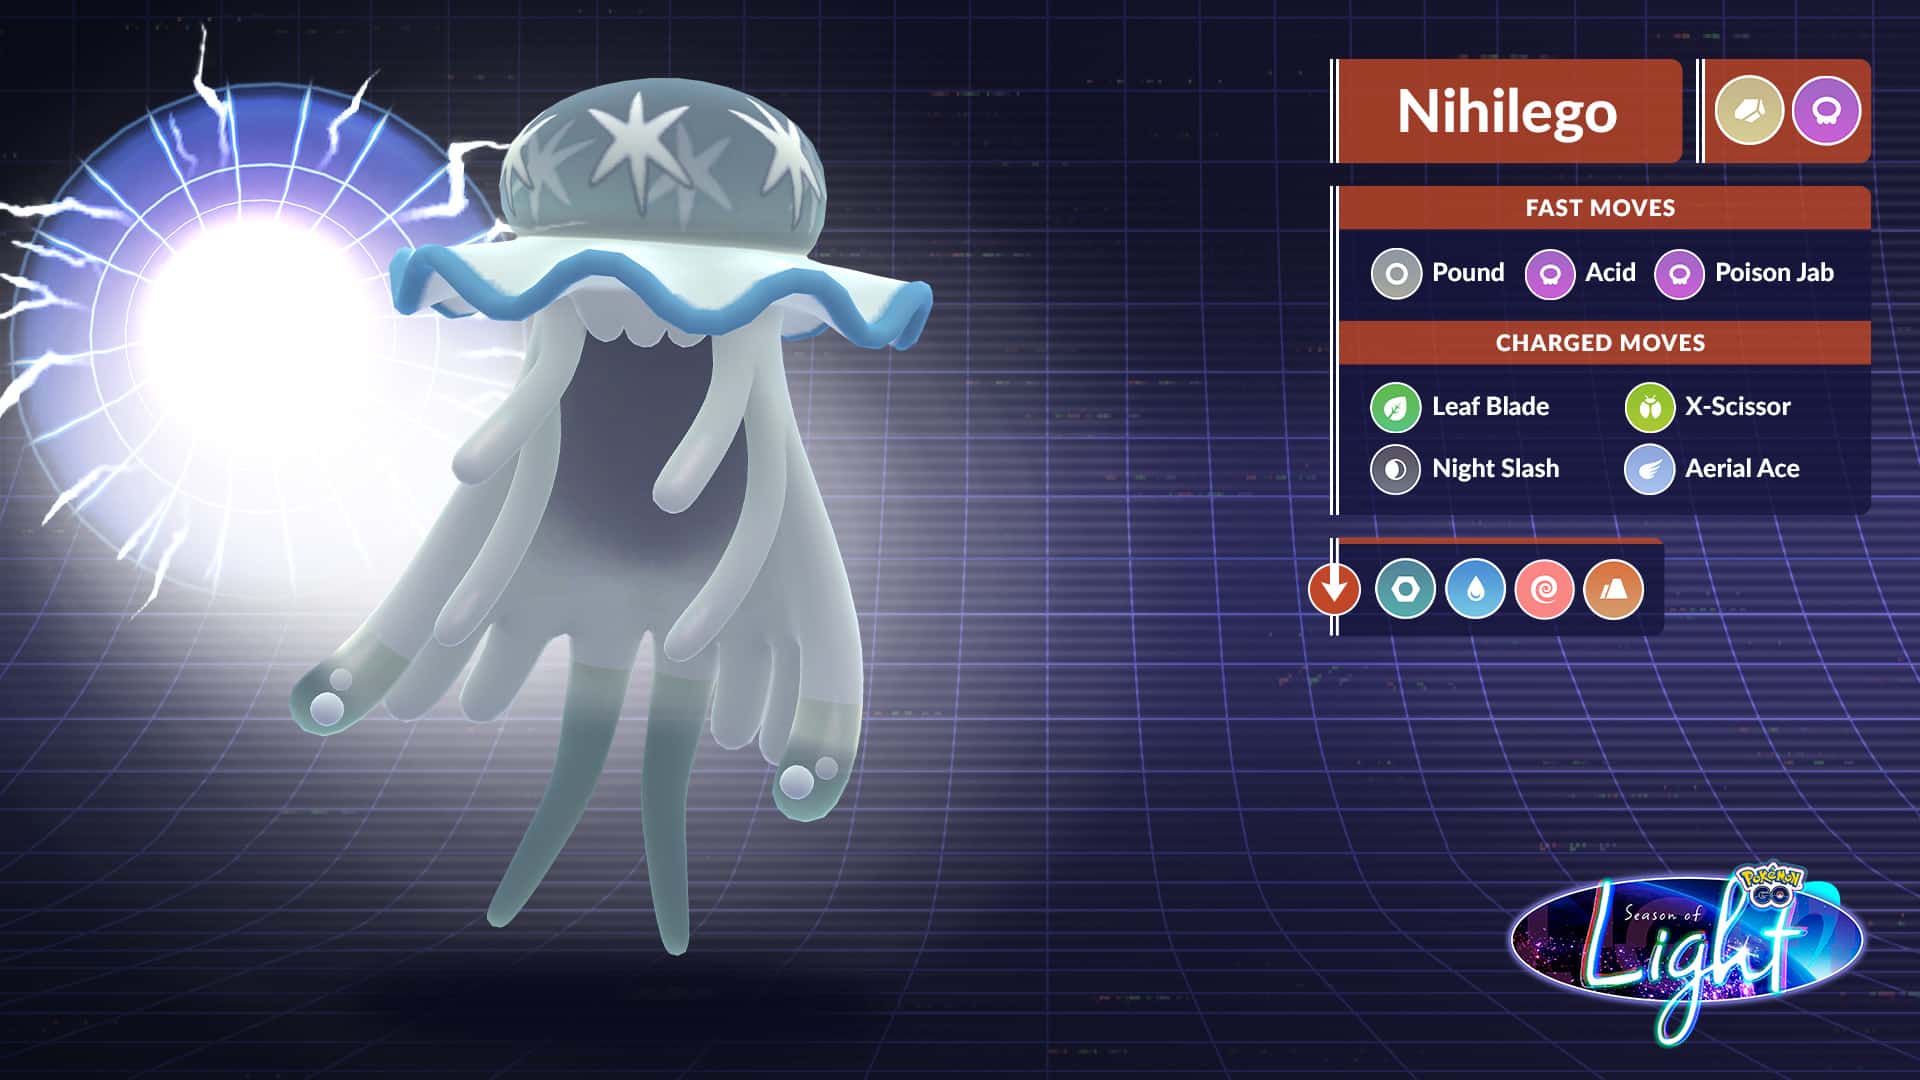 Pokémon GO: Nihilego Raid Guide